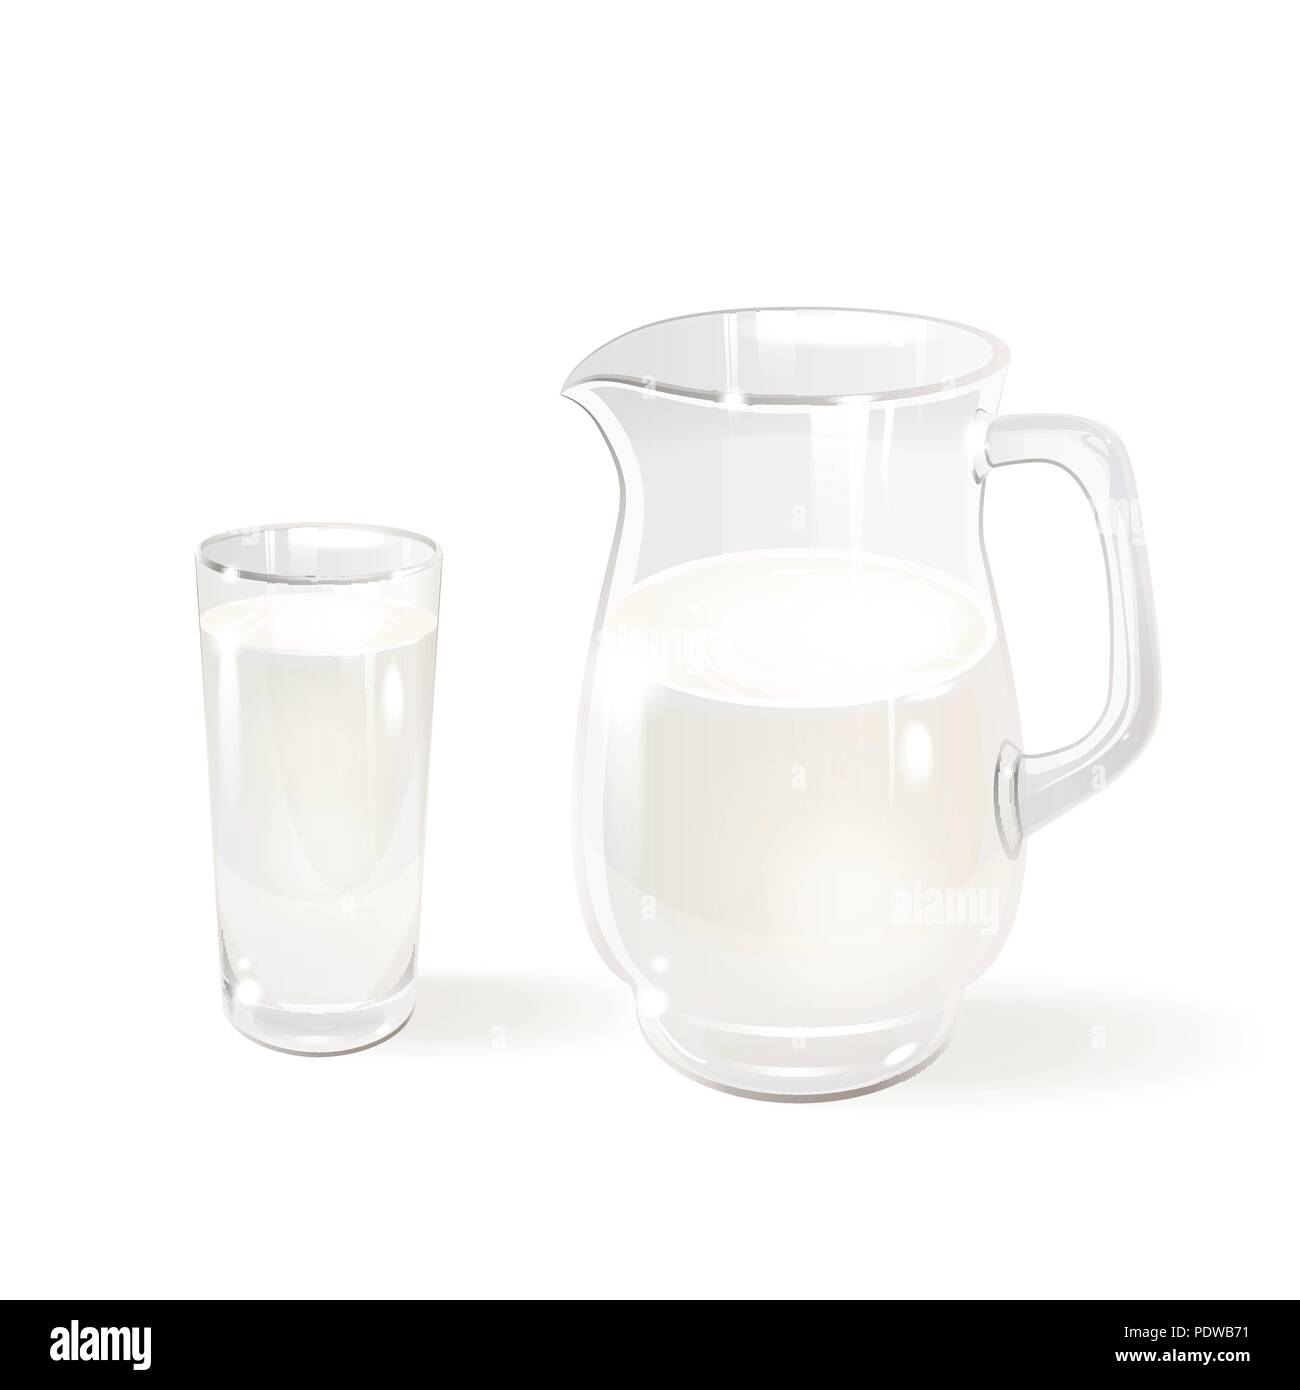 Le lait dans un pichet en verre et un verre sur un fond blanc Illustration de Vecteur